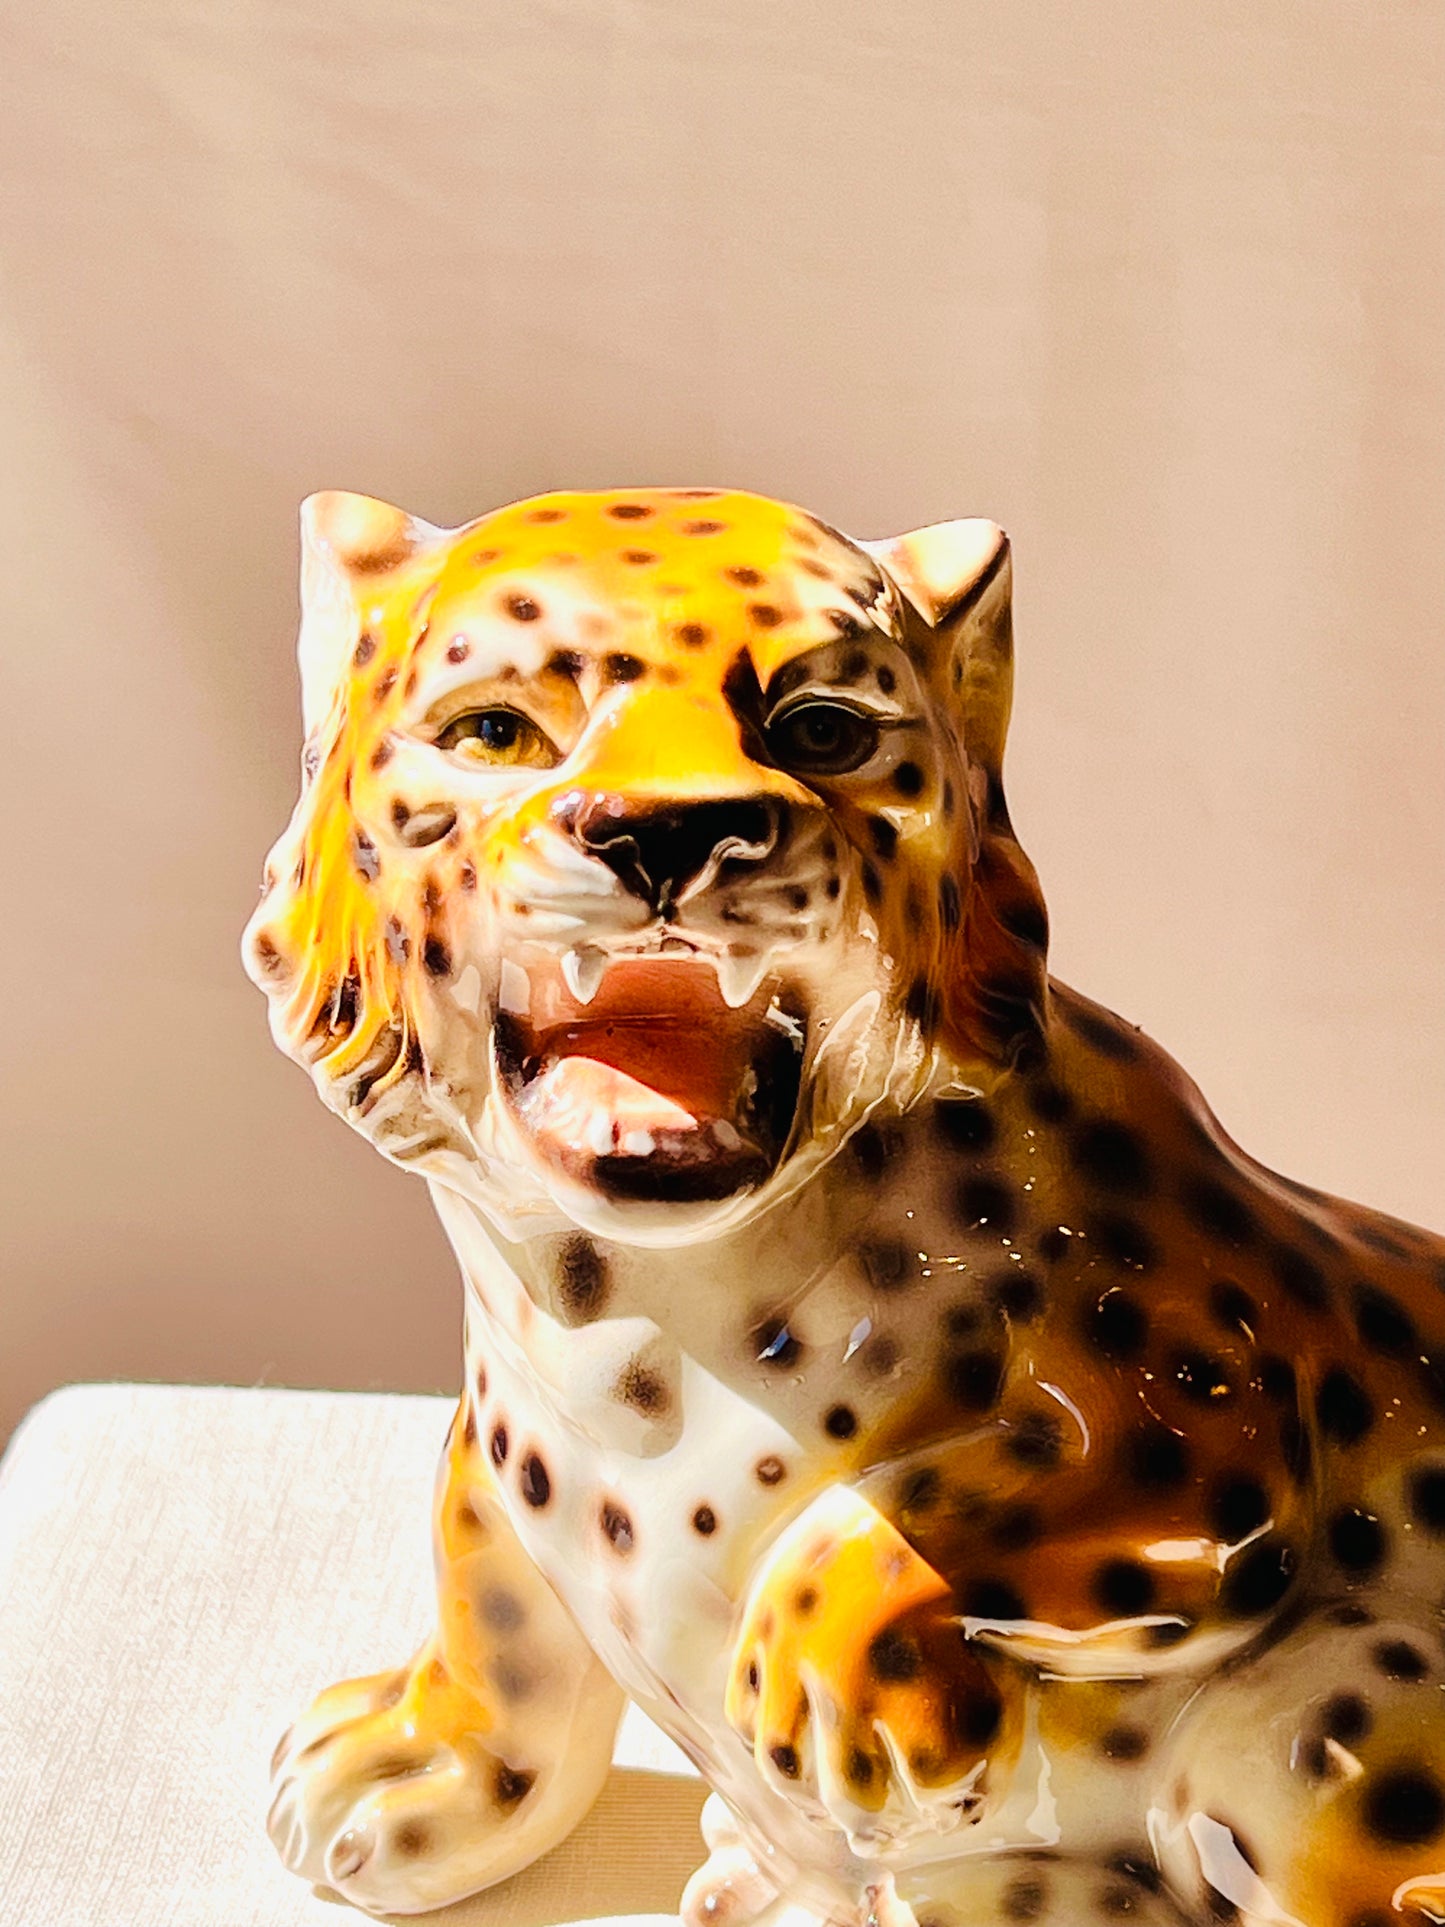 Leopardo baby rugiendo